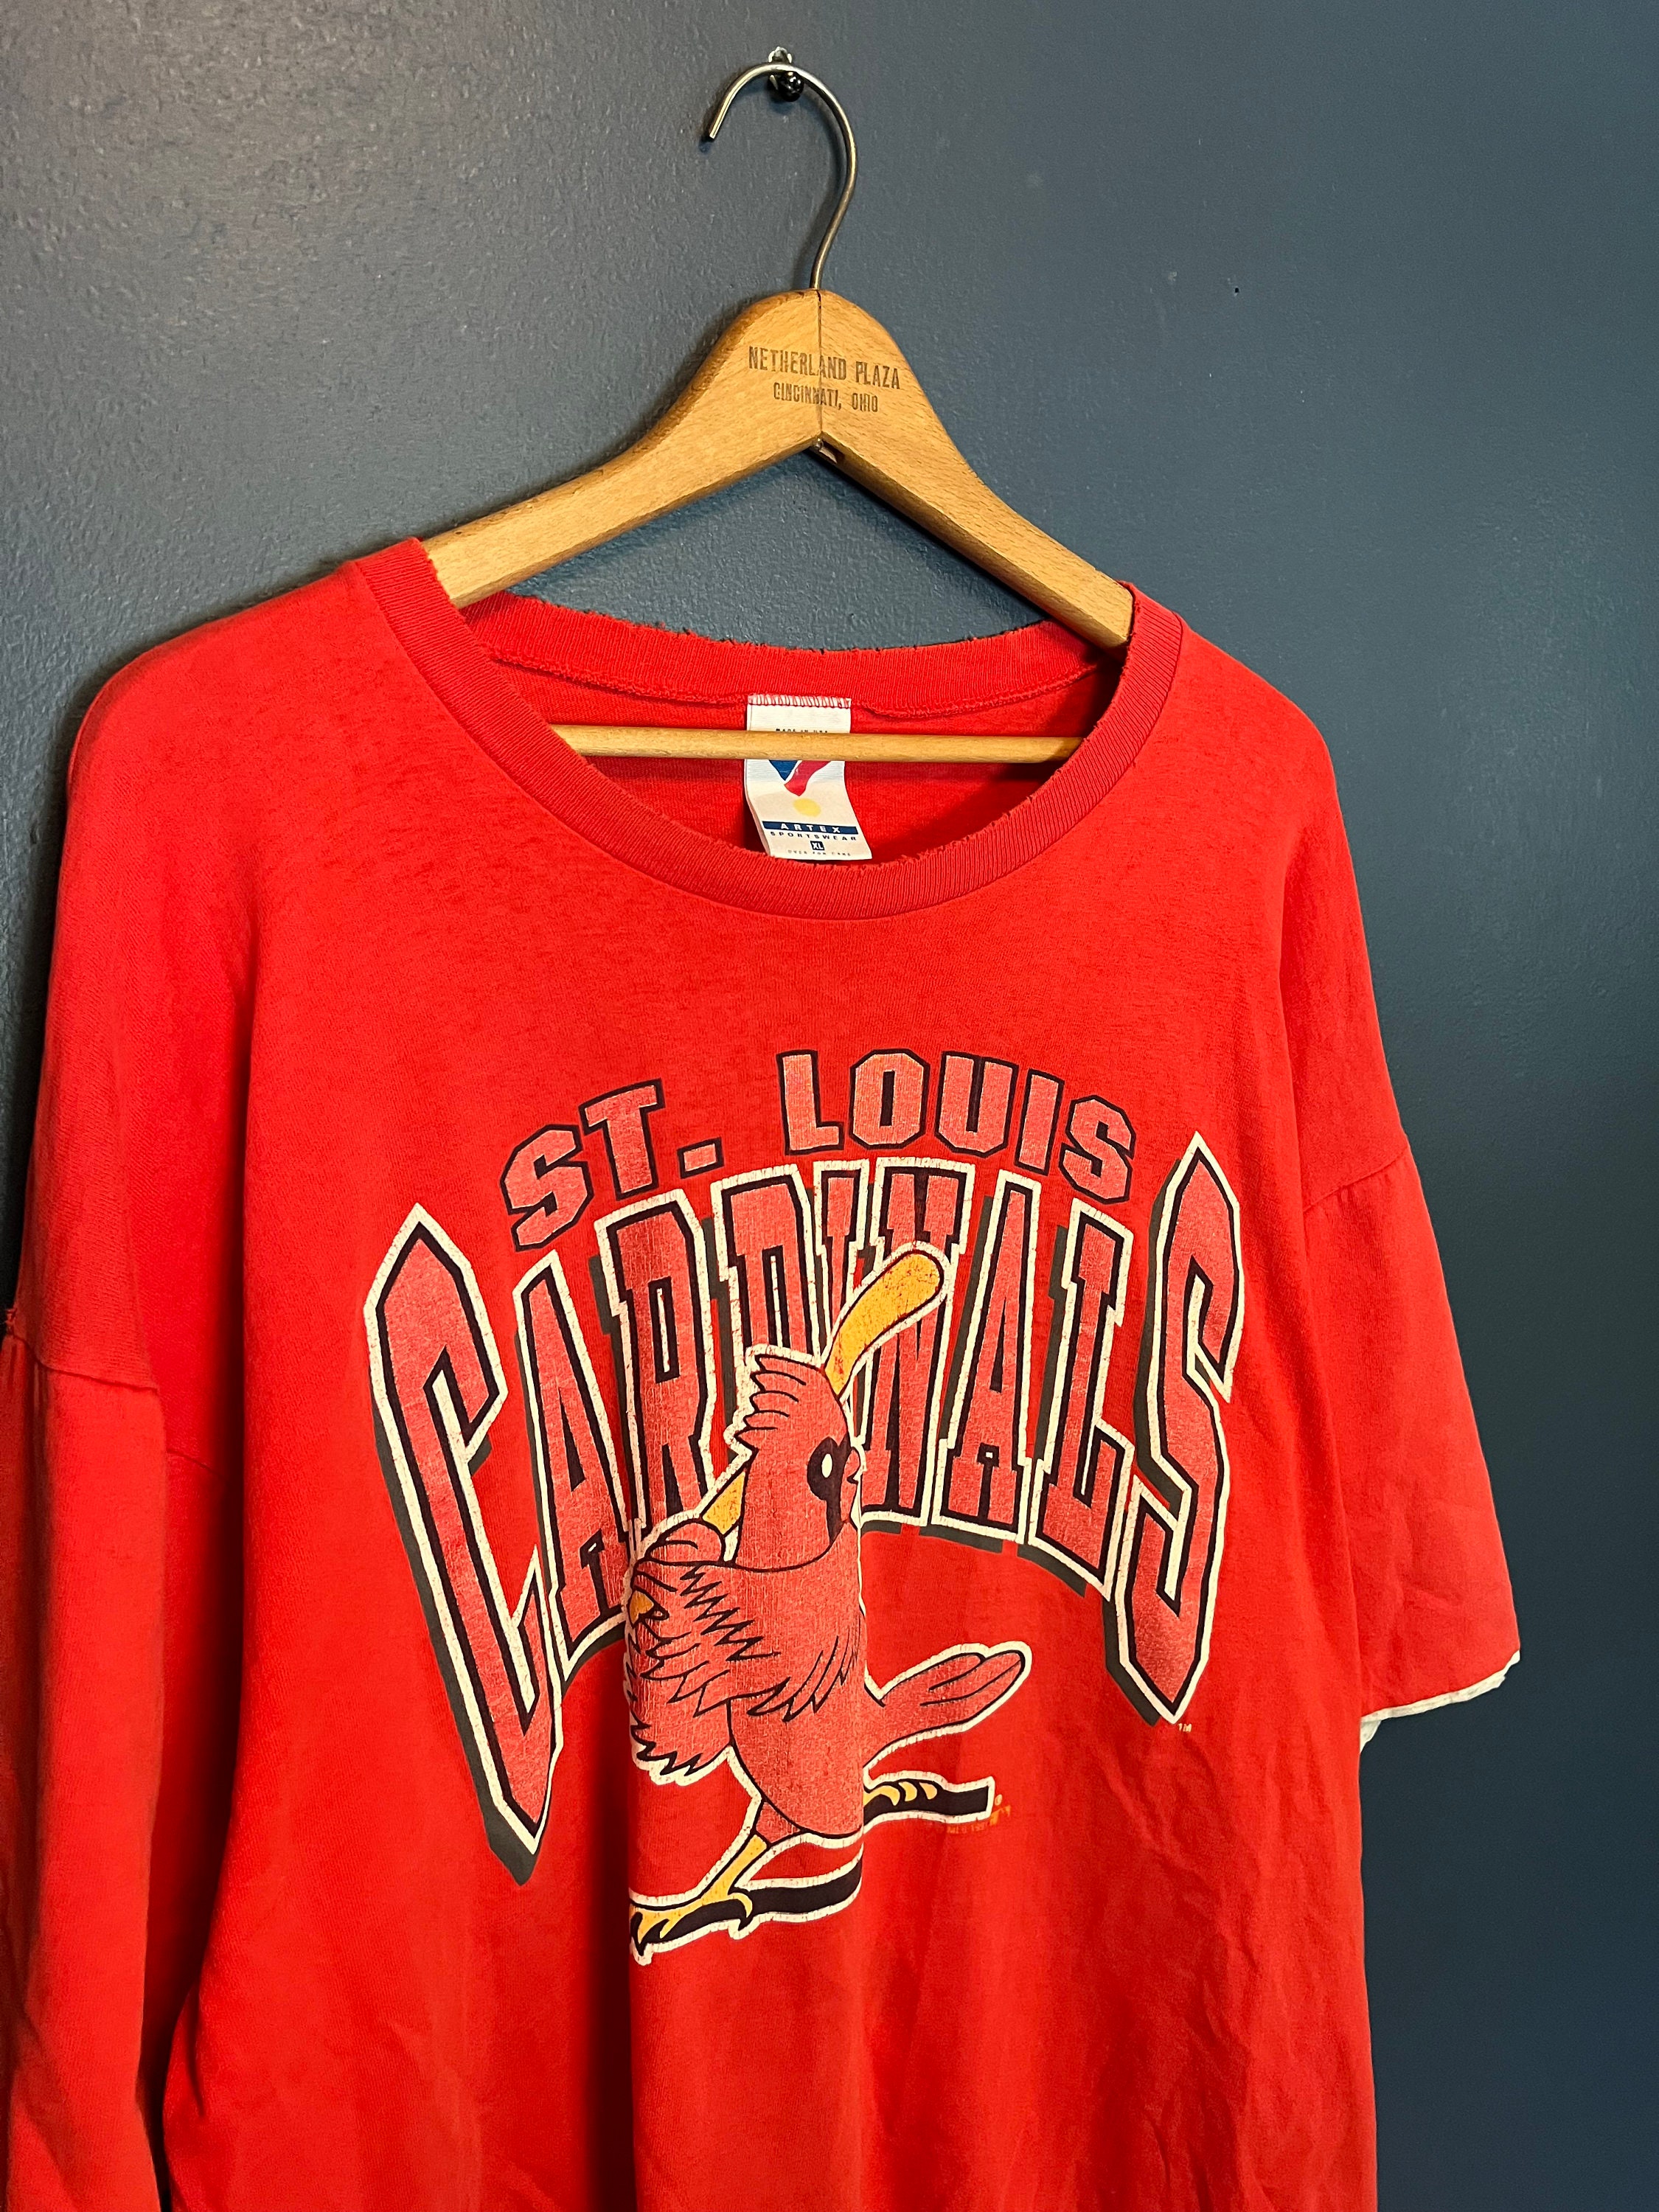 St. Louis Cardinals Ladies League Diva V Neck T-Shirt by Majestic